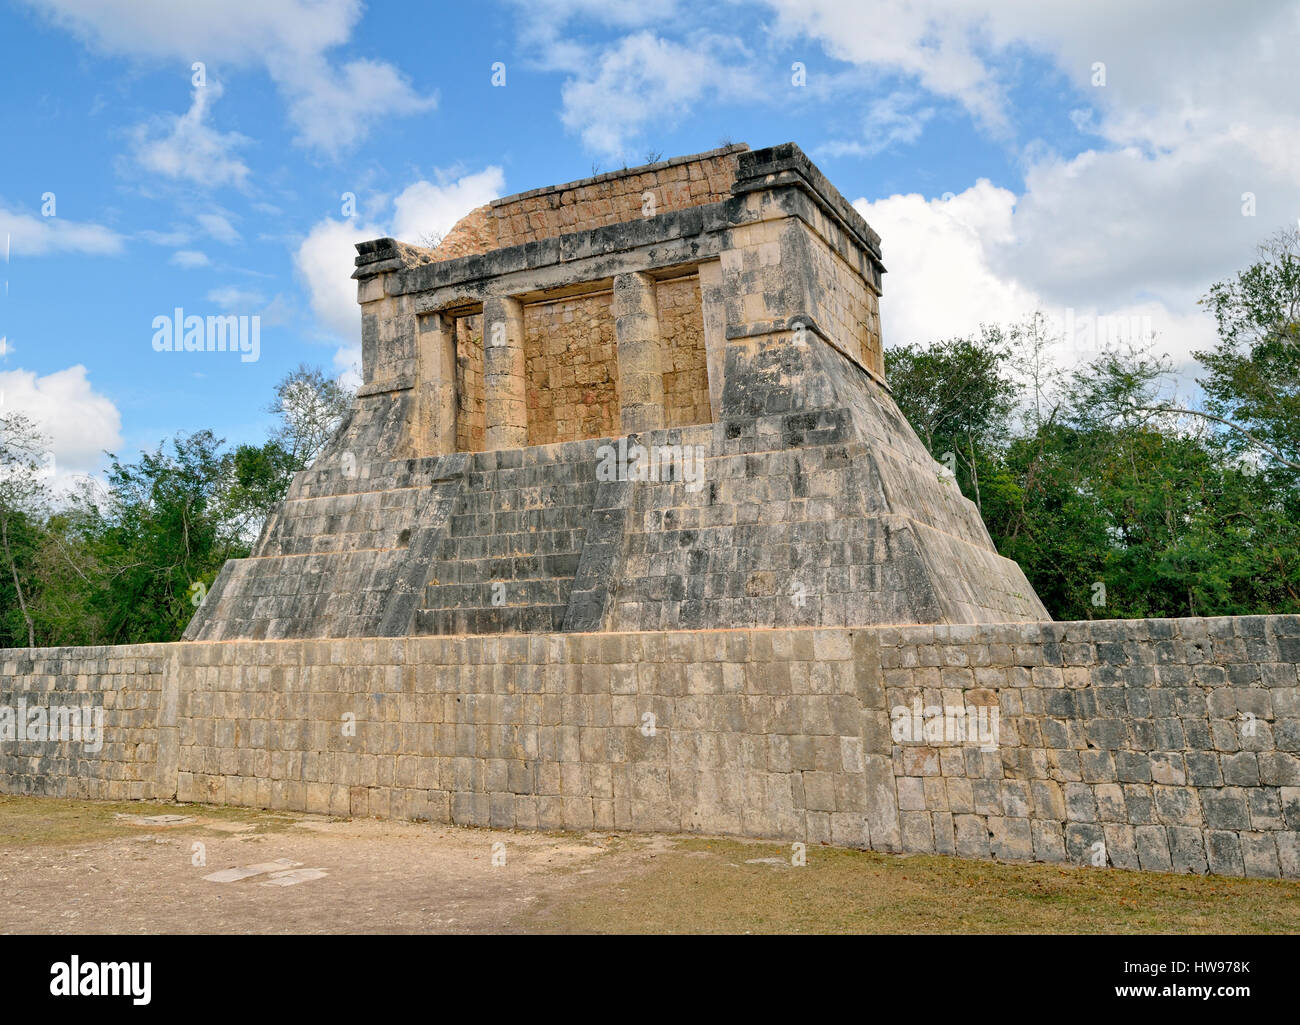 Templo del Hombre Barbado, el Templo del Hombre Barbado, histórica ciudad maya de Chichen Itza, pista, Yucatán, México. Foto de stock